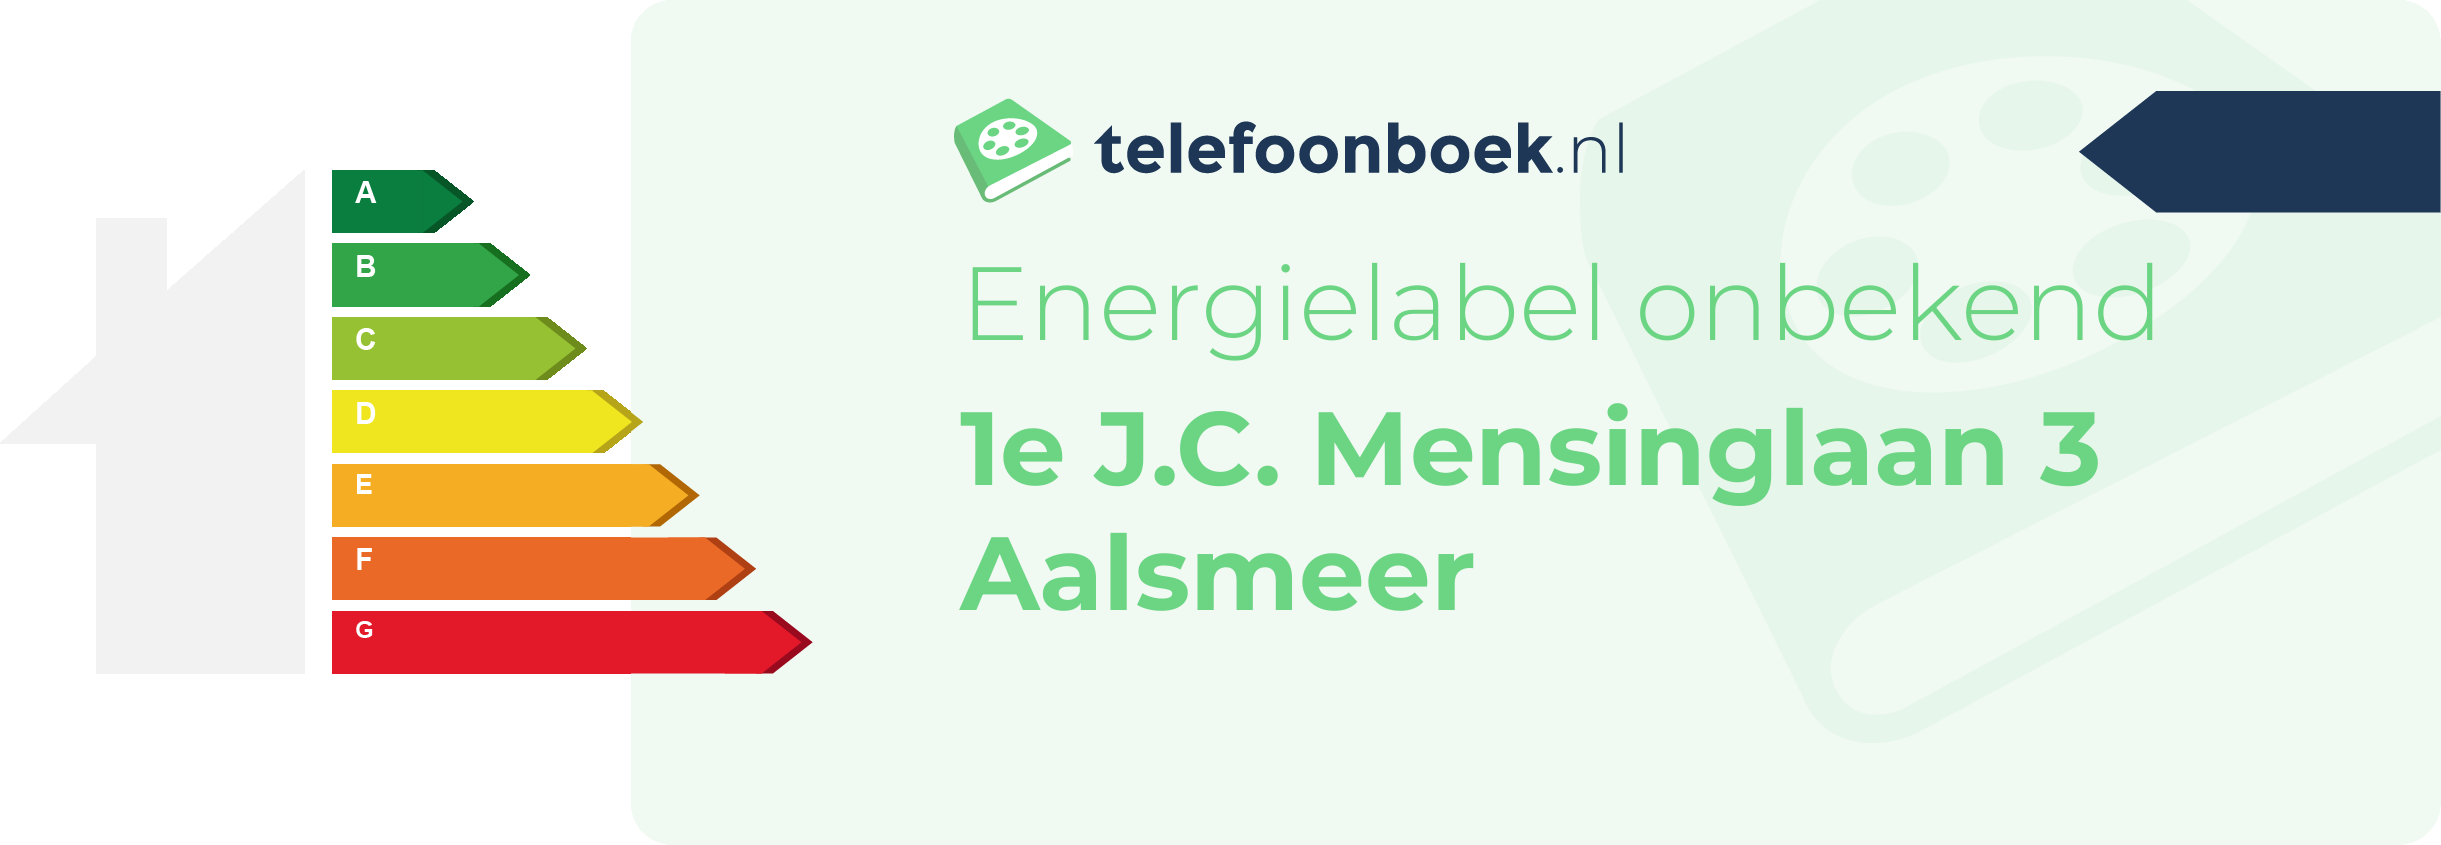 Energielabel 1e J.C. Mensinglaan 3 Aalsmeer